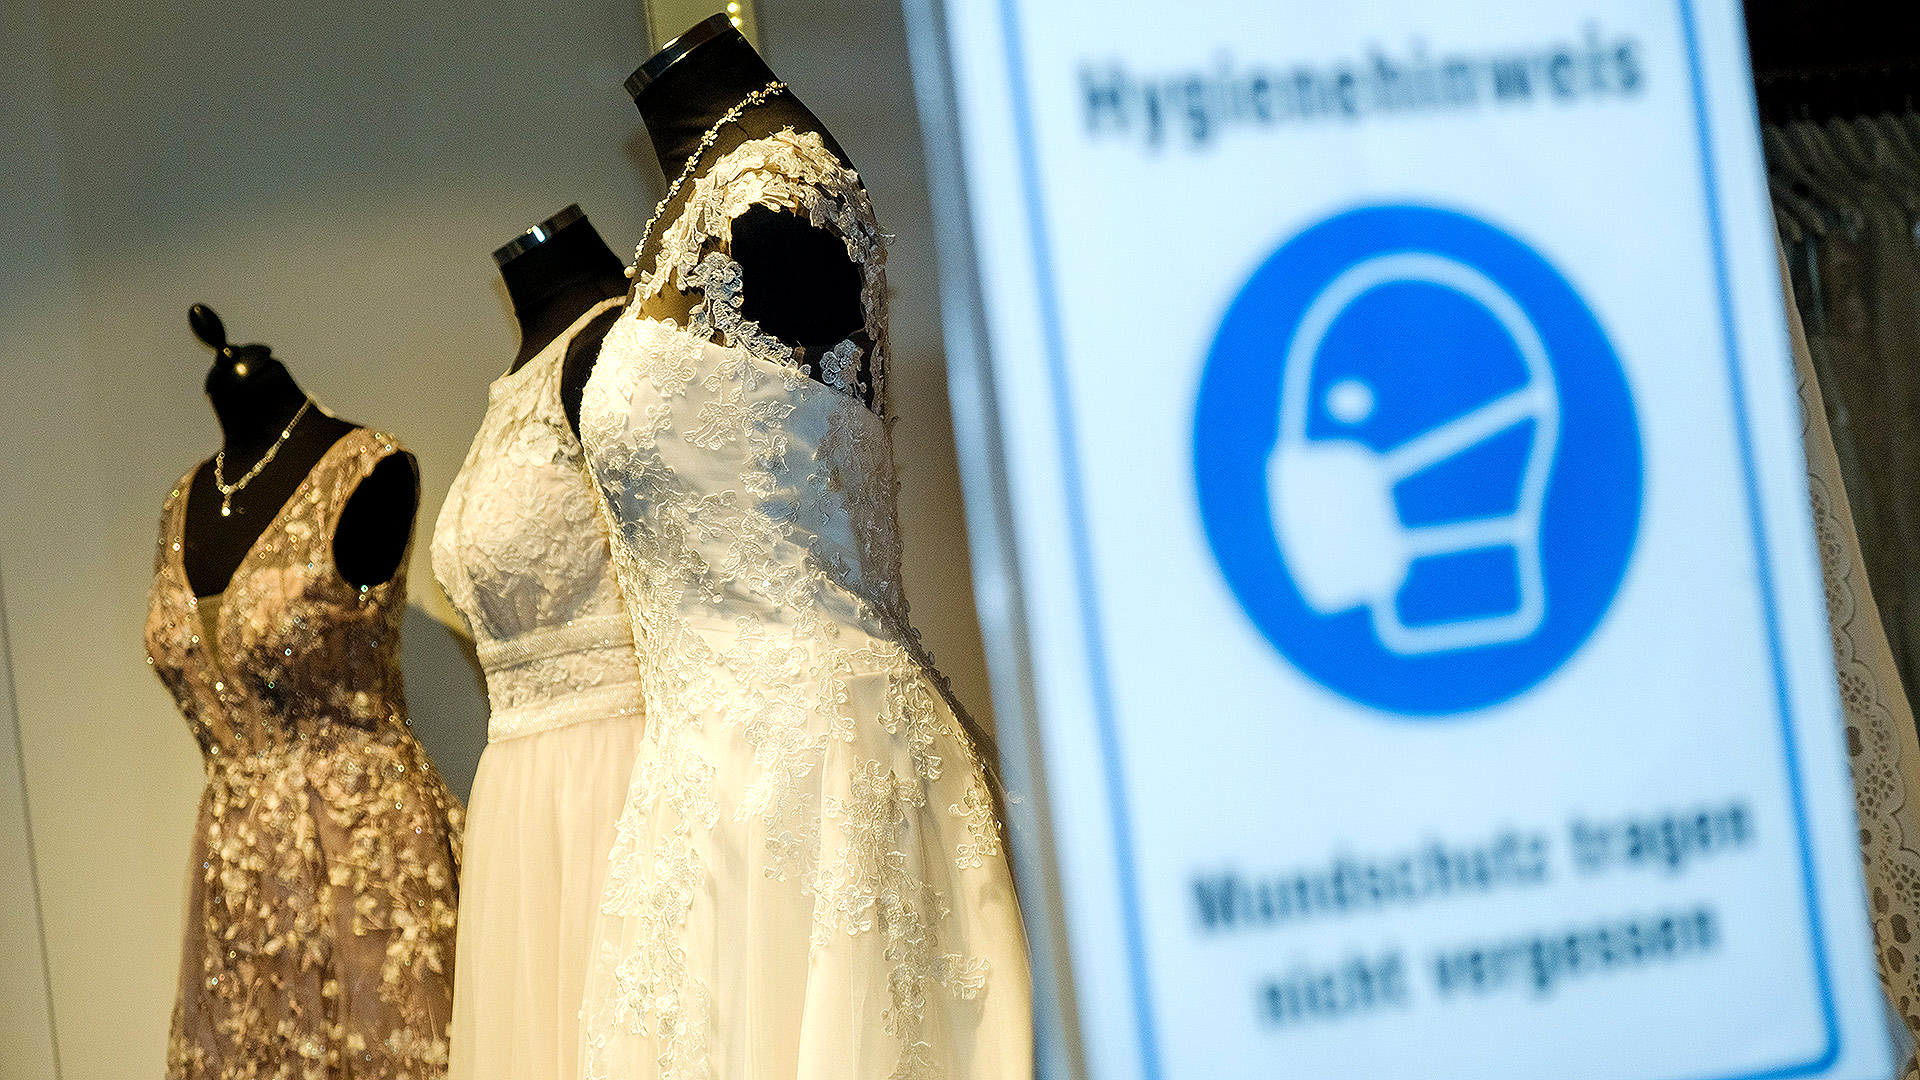 Brautkleider in einem Schaufenster und im Vordergrund ein Hinweisschild zur Maskenpflicht während der Corona-Pandemie